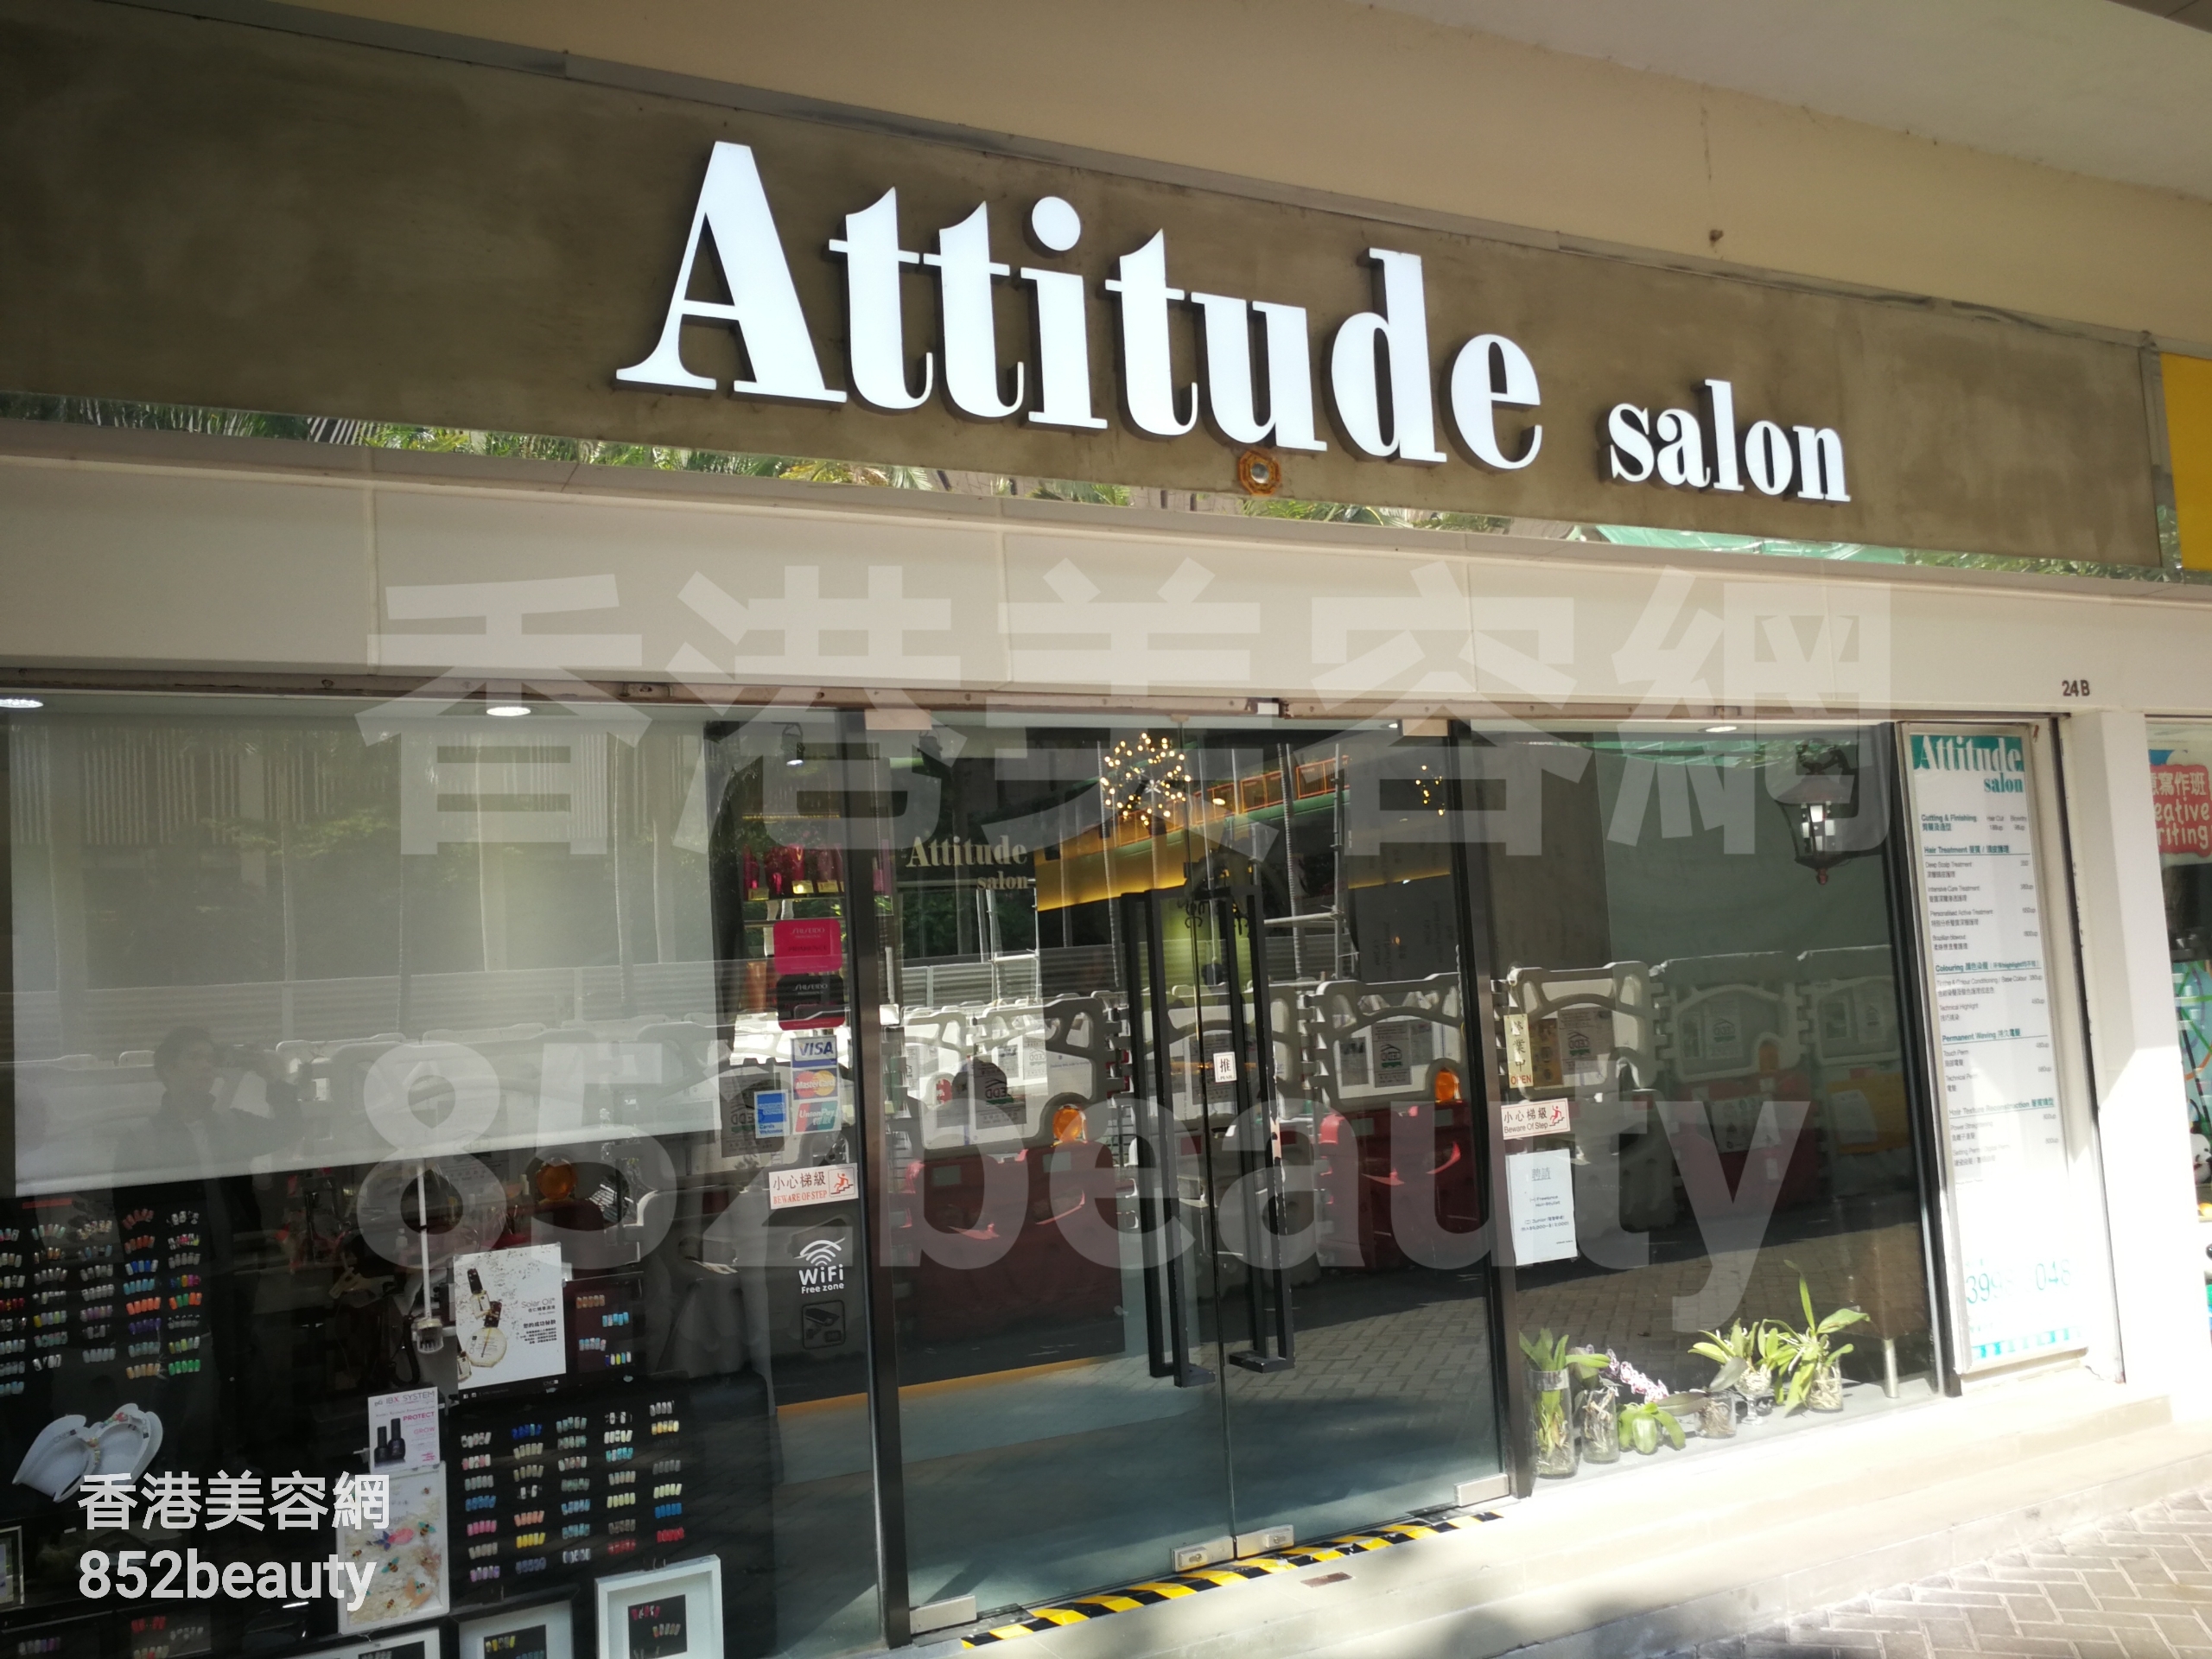 Beauty Salon: Attitude Salon